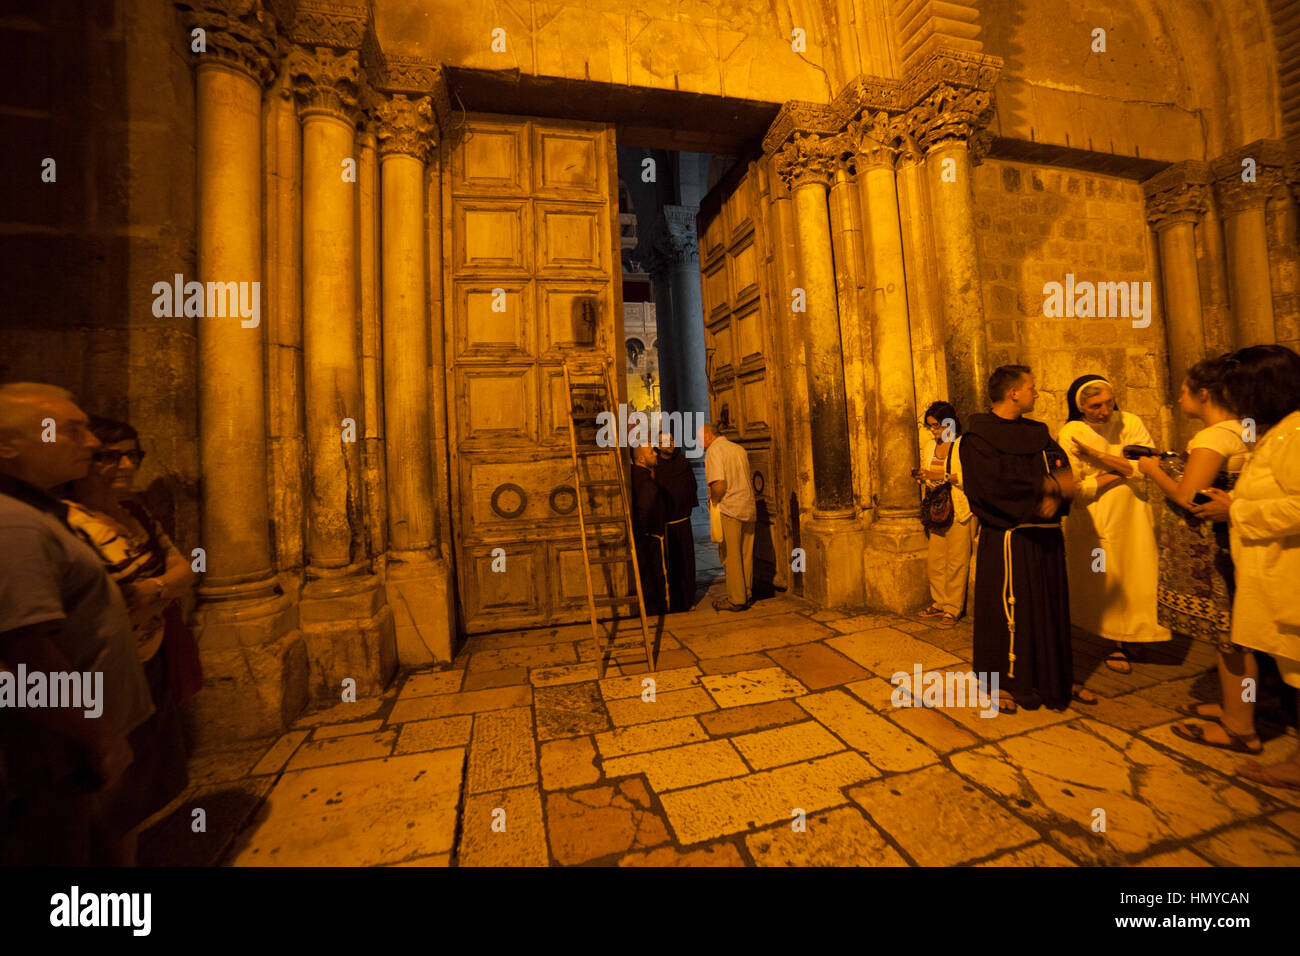 Jérusalem, Israël - 12 juillet 2014 : pèlerins attendre pour un rituel de la fermeture des portes de l'église de Saint sépulcre. Banque D'Images